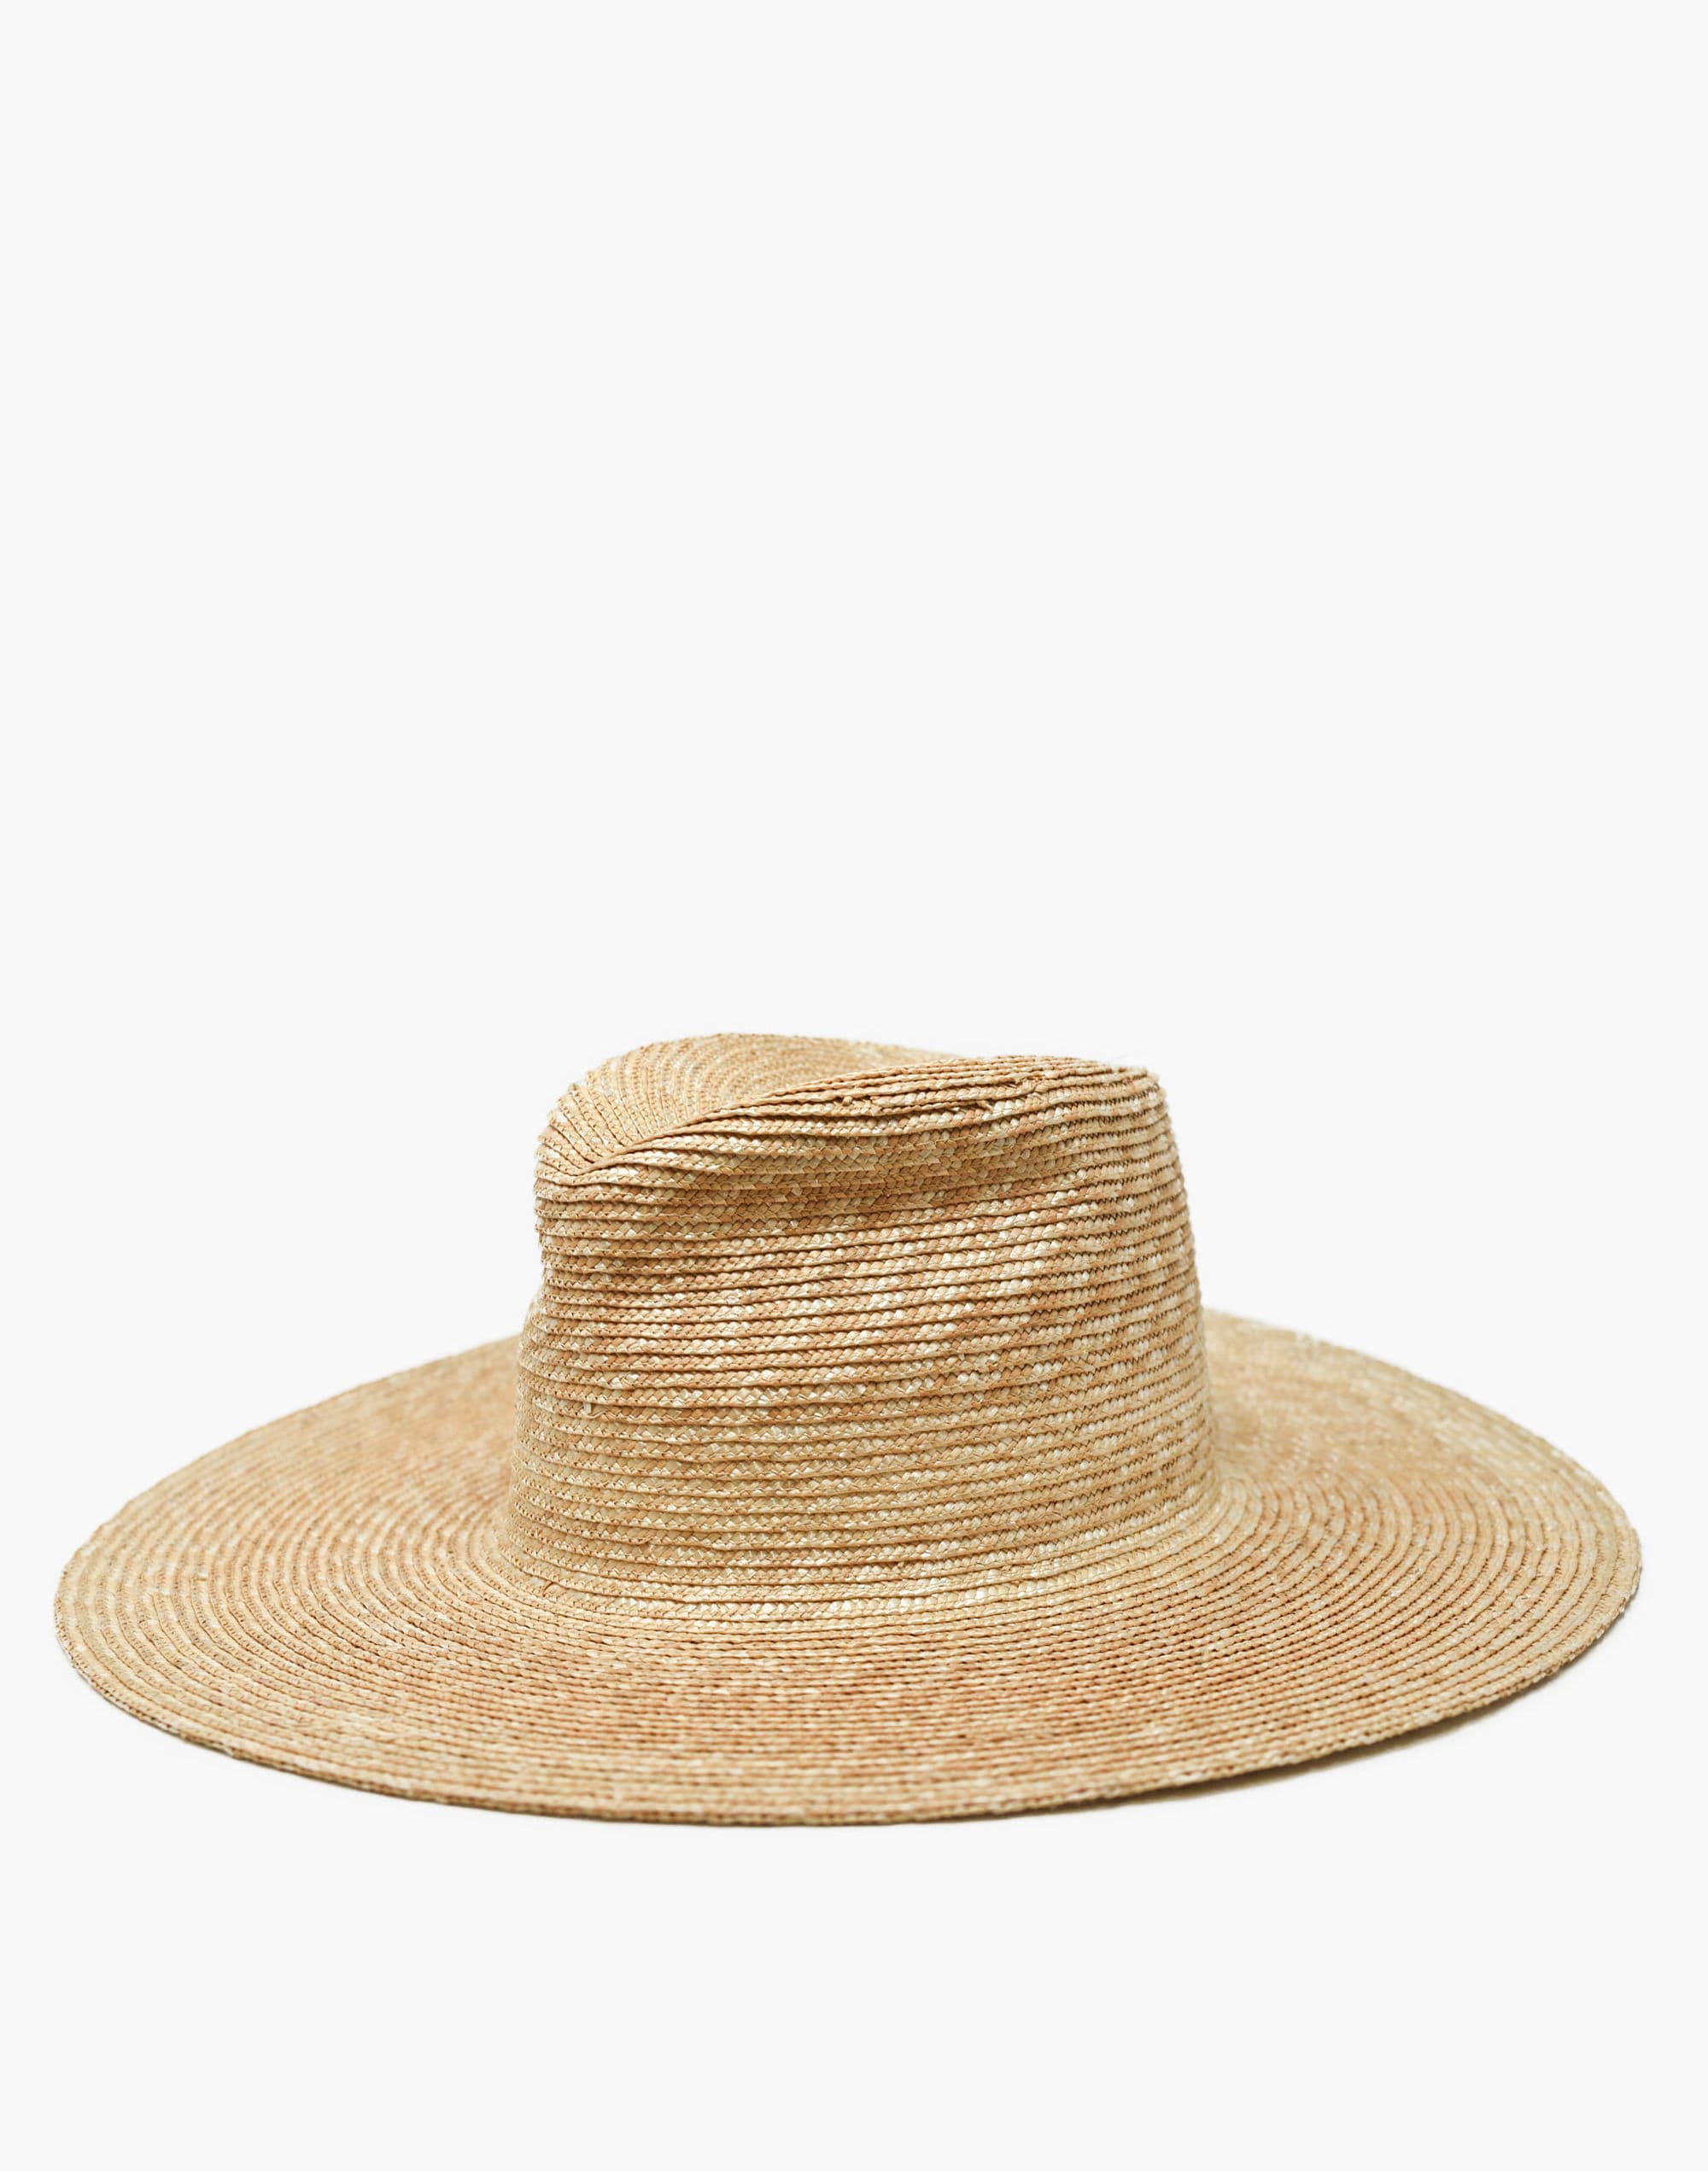 WYETH™ Straw Ipanema Hat